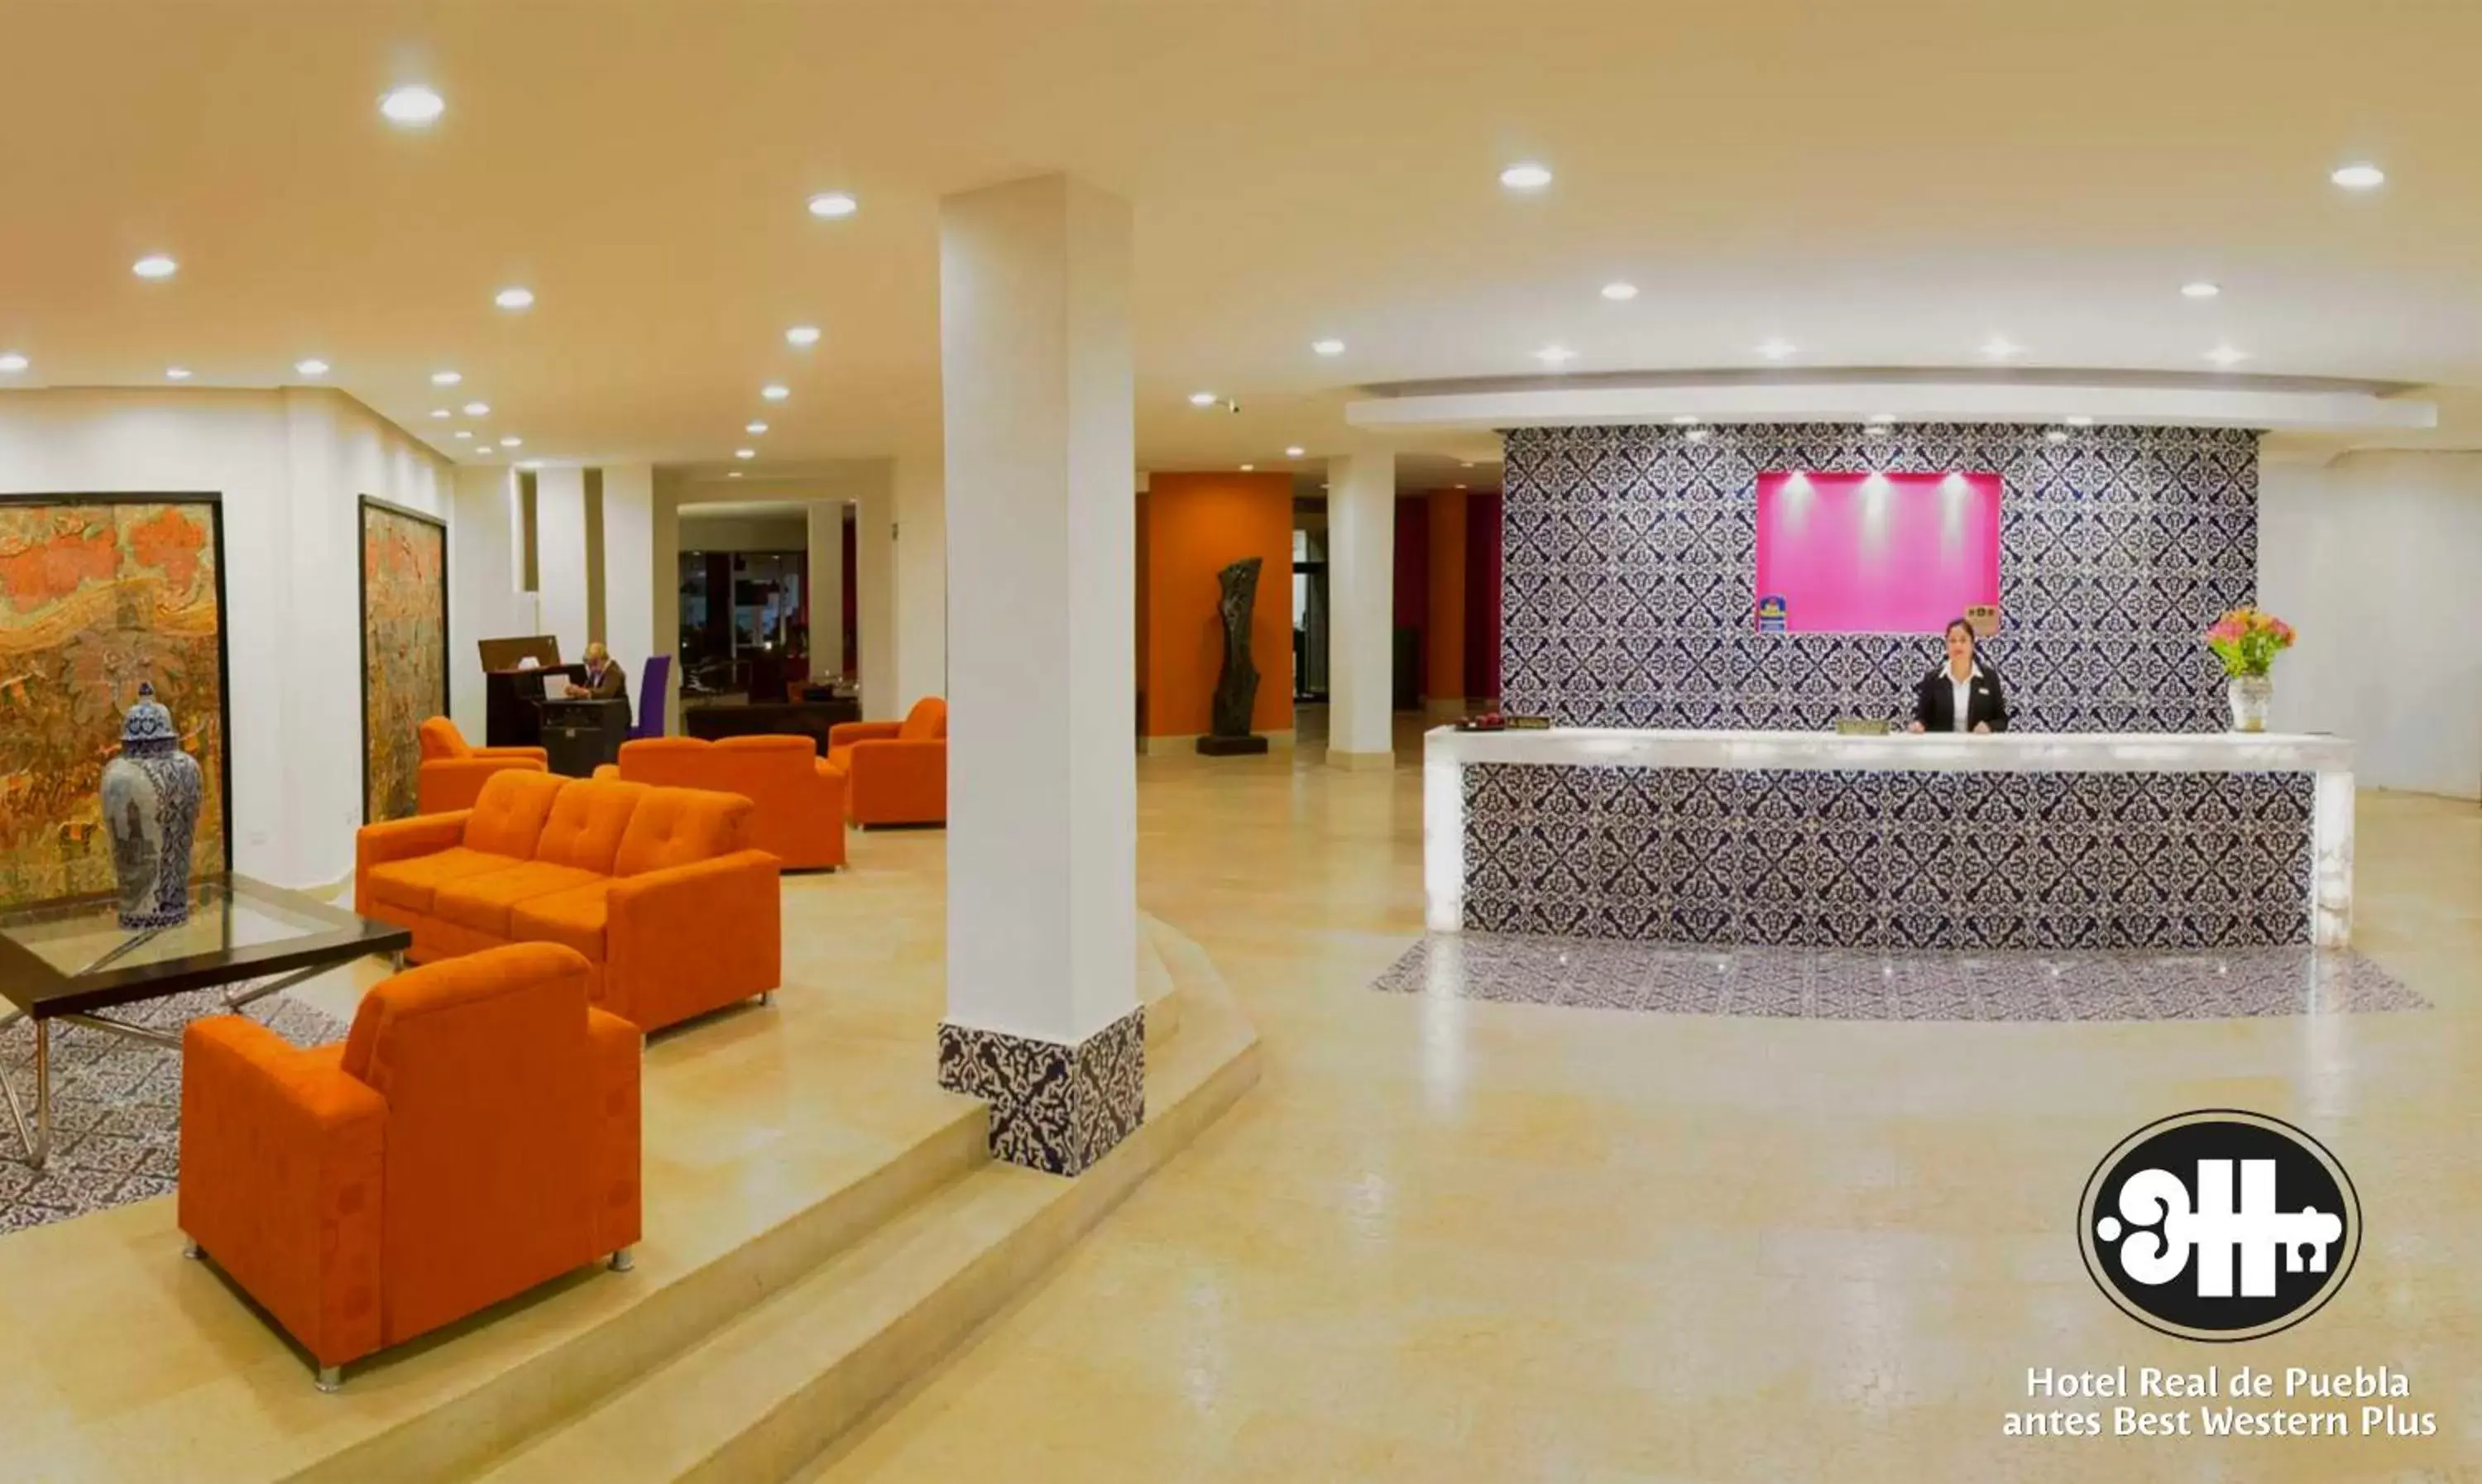 Lobby or reception, Lobby/Reception in Hotel Real de Puebla